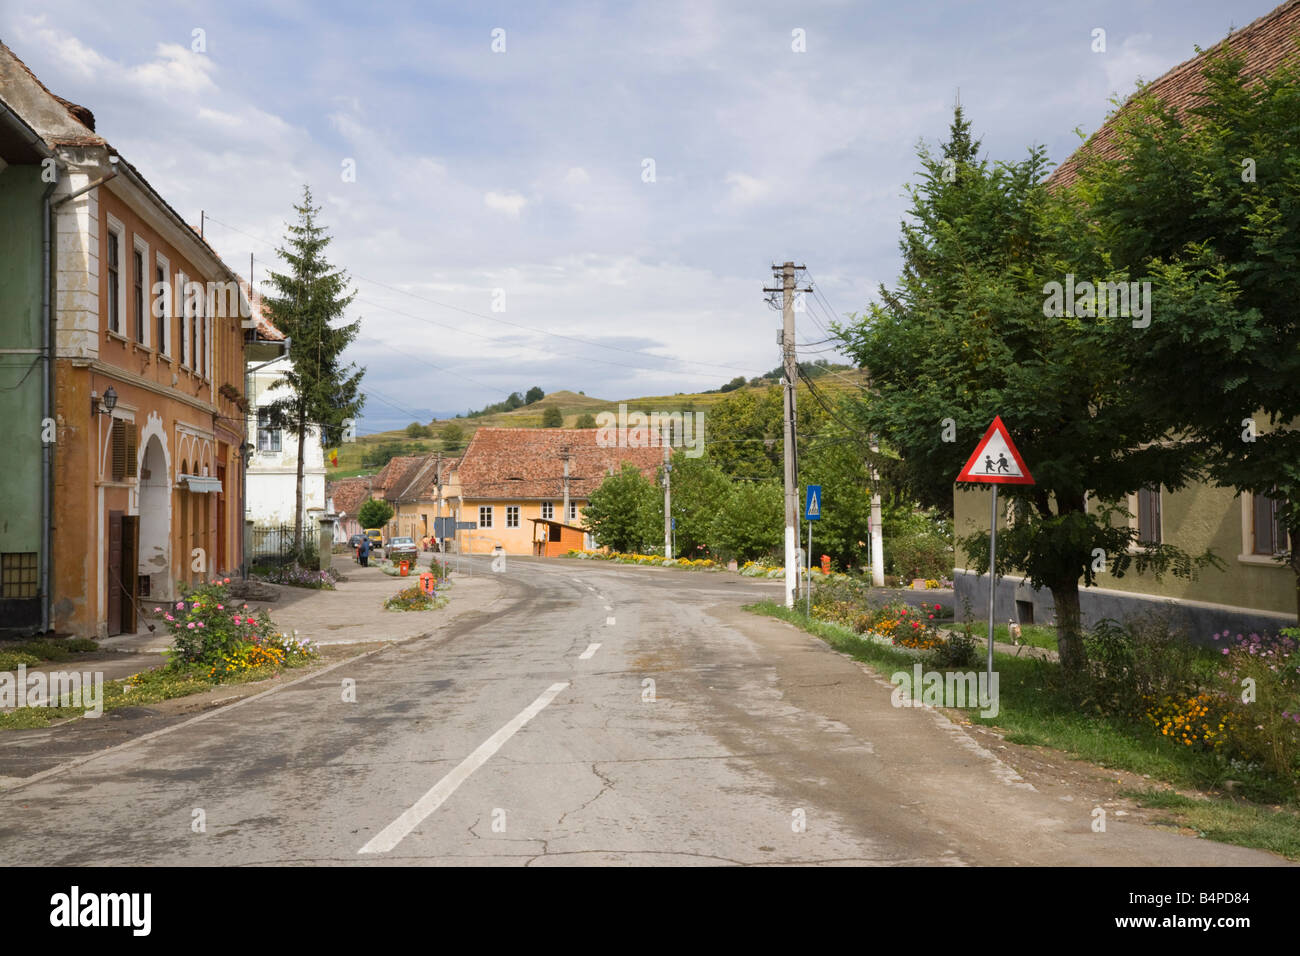 Birthälm Siebenbürgen Rumänien Europa Hauptstraße durch Dorf Zentrum sächsische deutsche Siedlung jetzt zum UNESCO-Weltkulturerbe Stockfoto